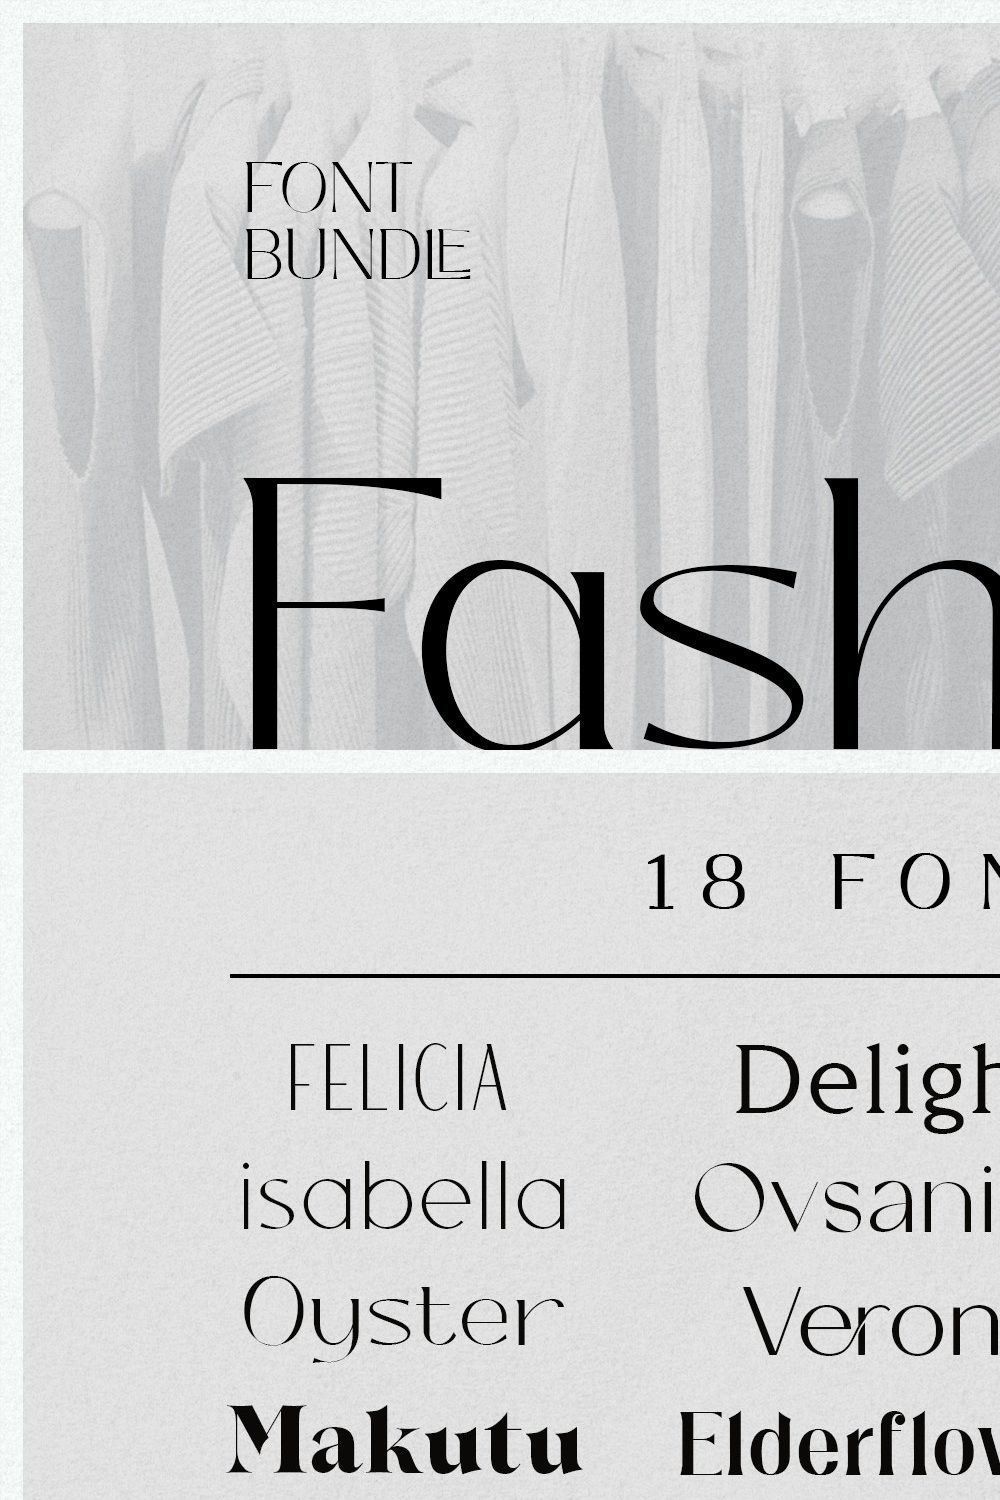 The Fashion Font Bundle (18 Fonts) pinterest preview image.